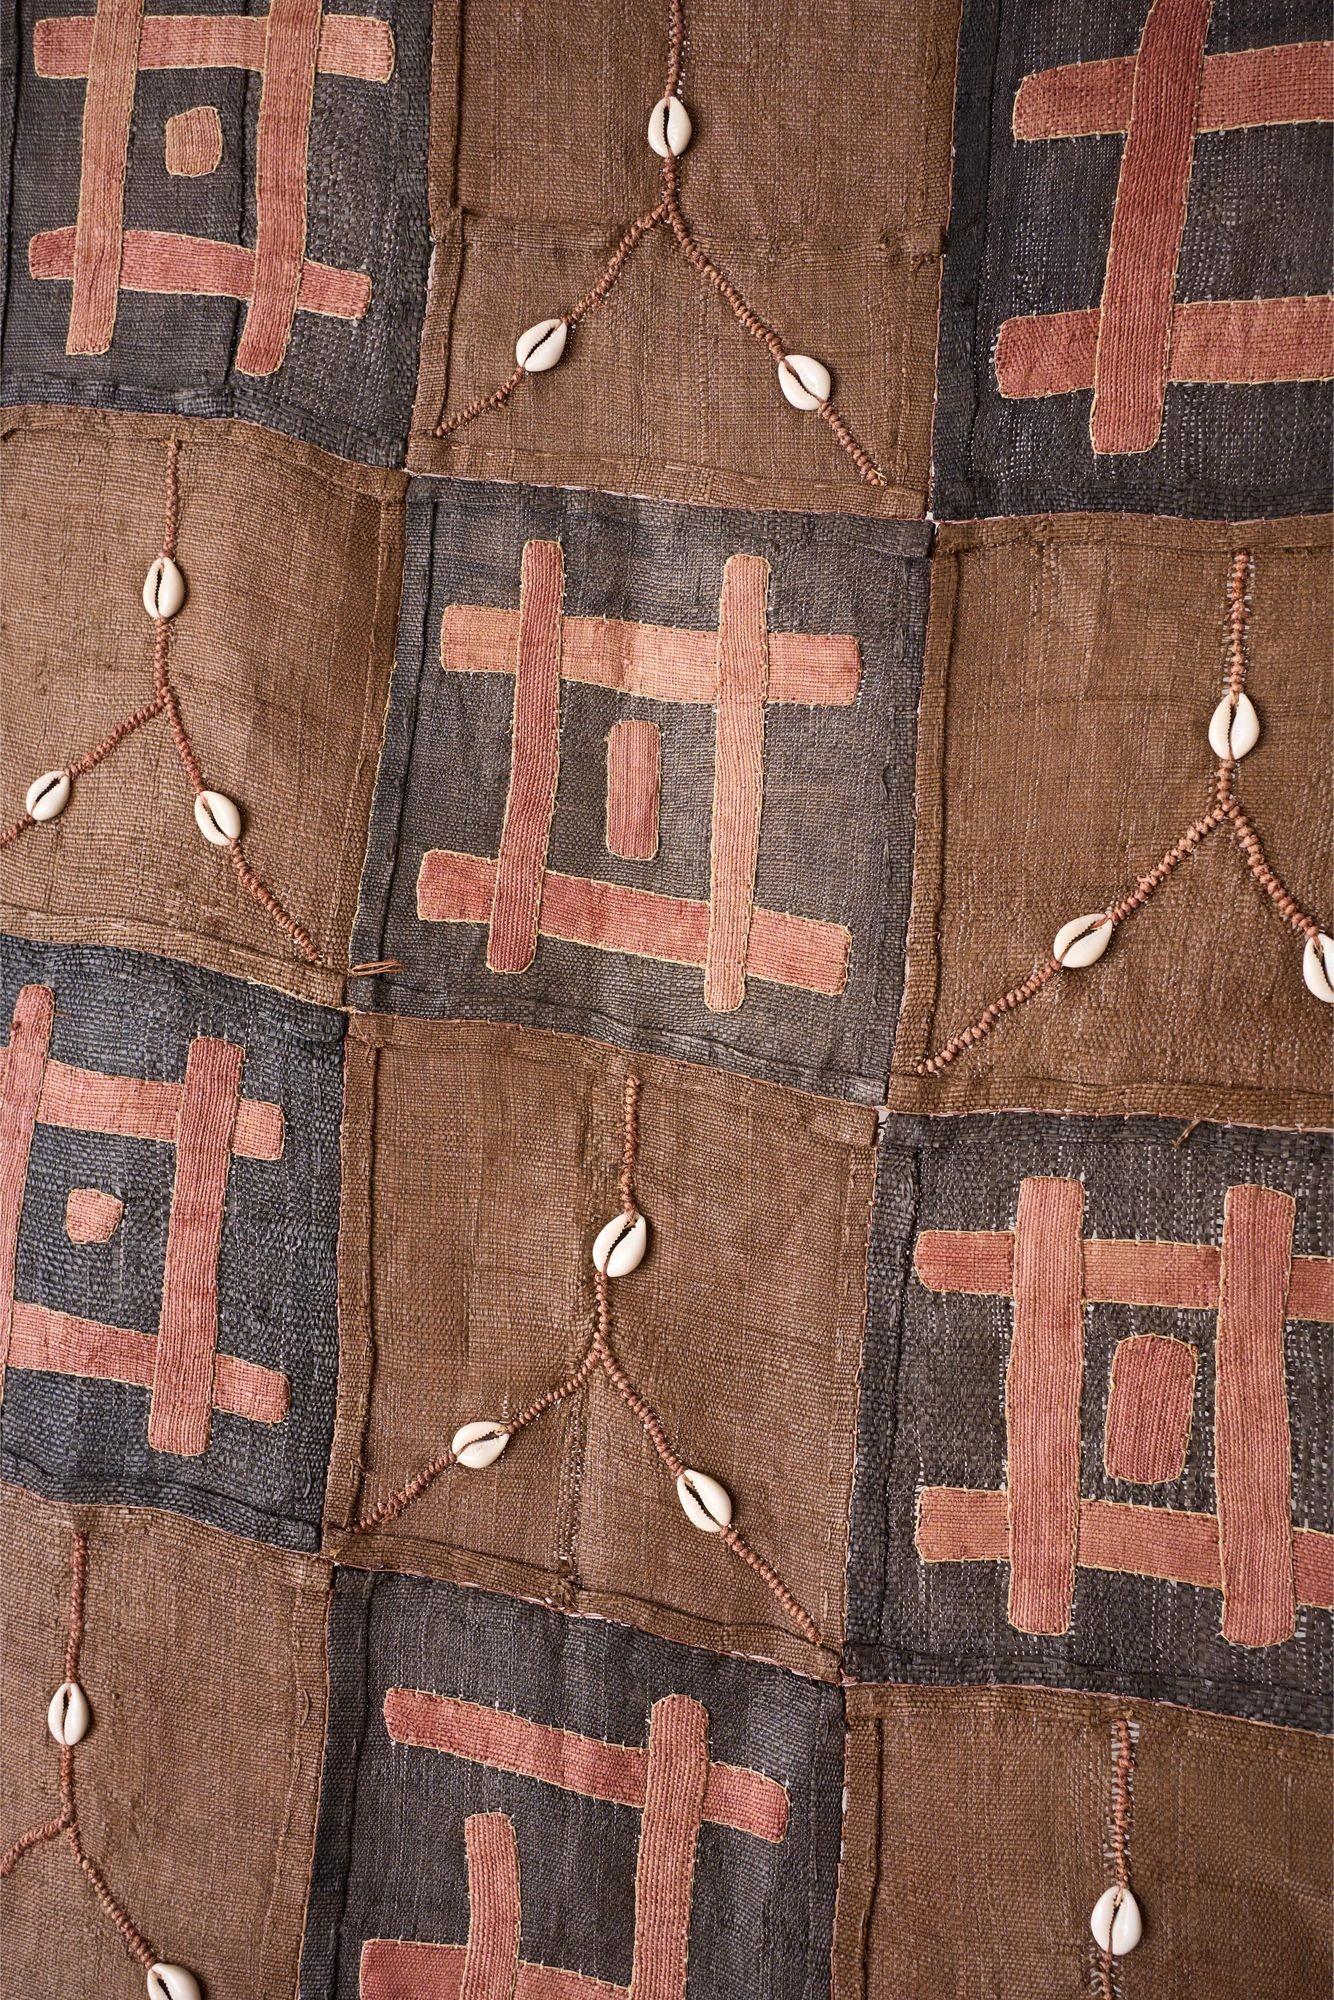 Il s'agit d'un tissu Kuba africain du Congo du 20e siècle, extrêmement décoratif et très long. Fabriqué entièrement à la main avec des formes abstraites appliquées pour créer cette pièce au design saisissant. Idéales comme décoration murale, elles